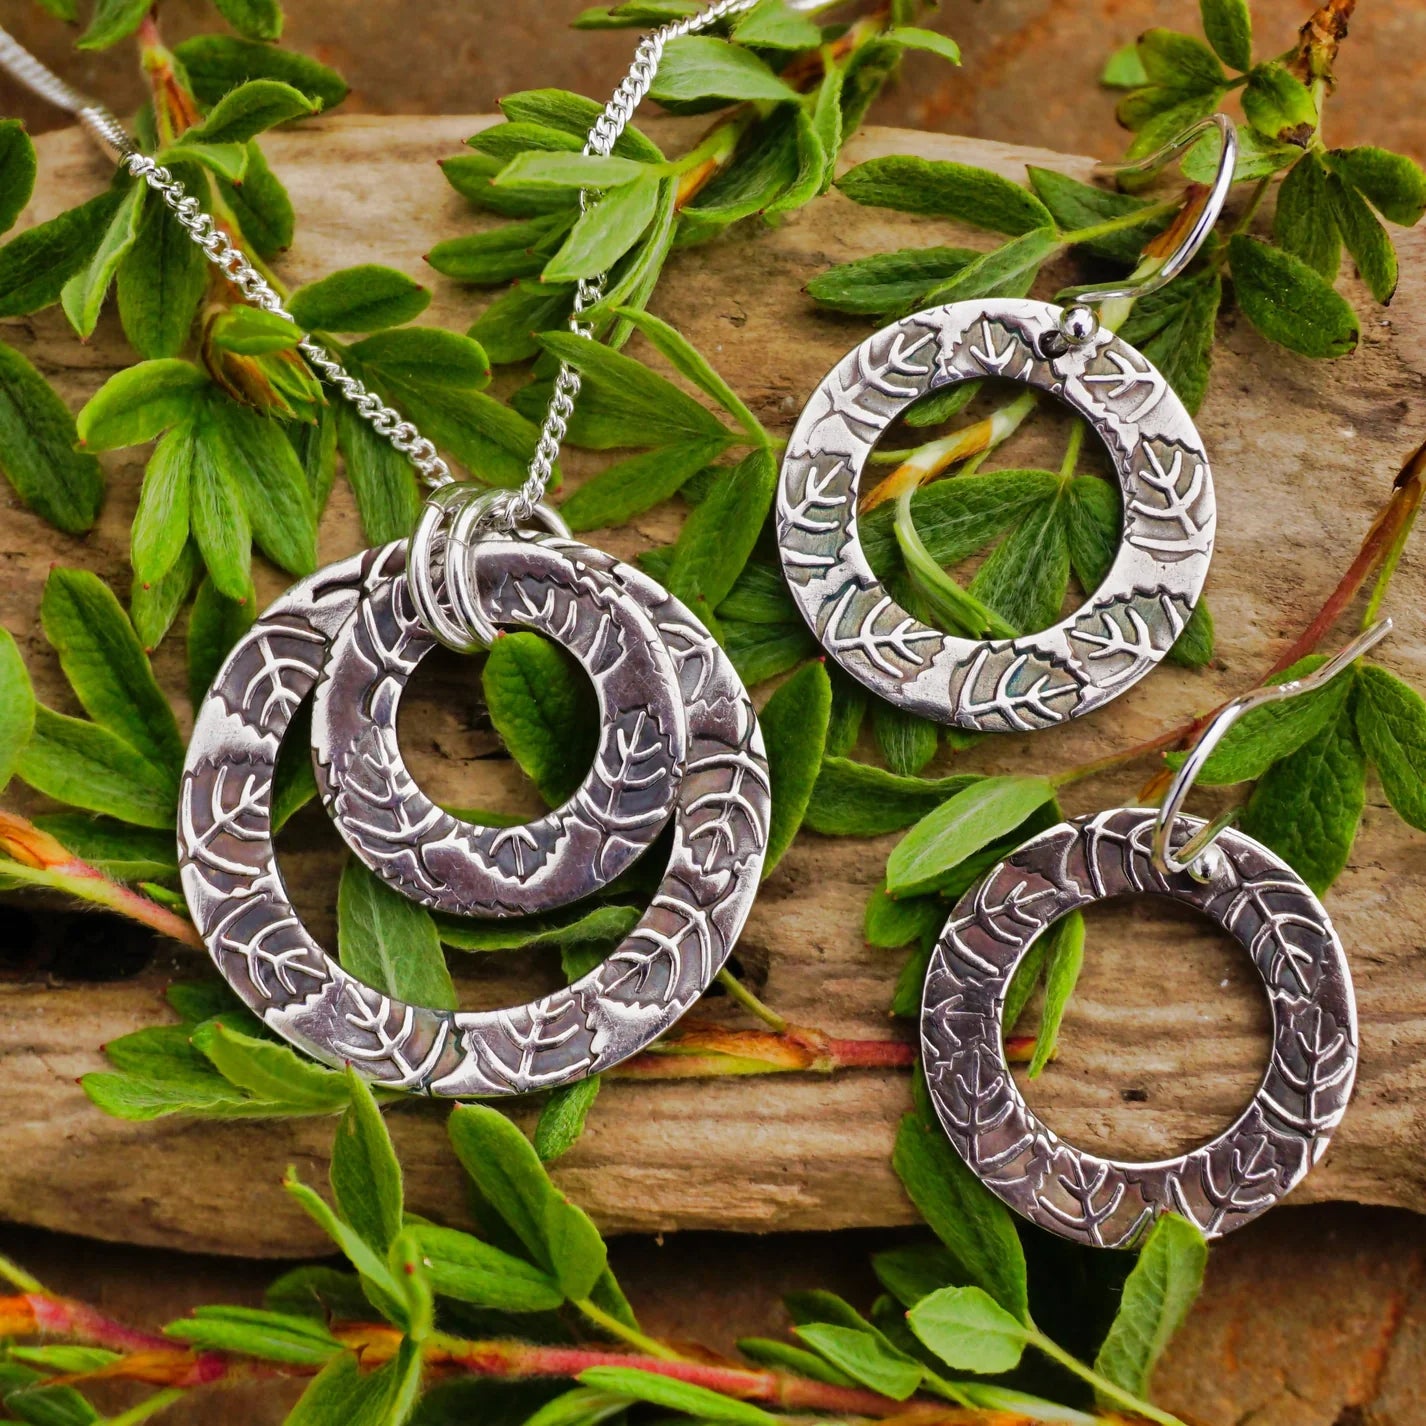 Leaves on Rings Pendant on Chain - Drift Designs